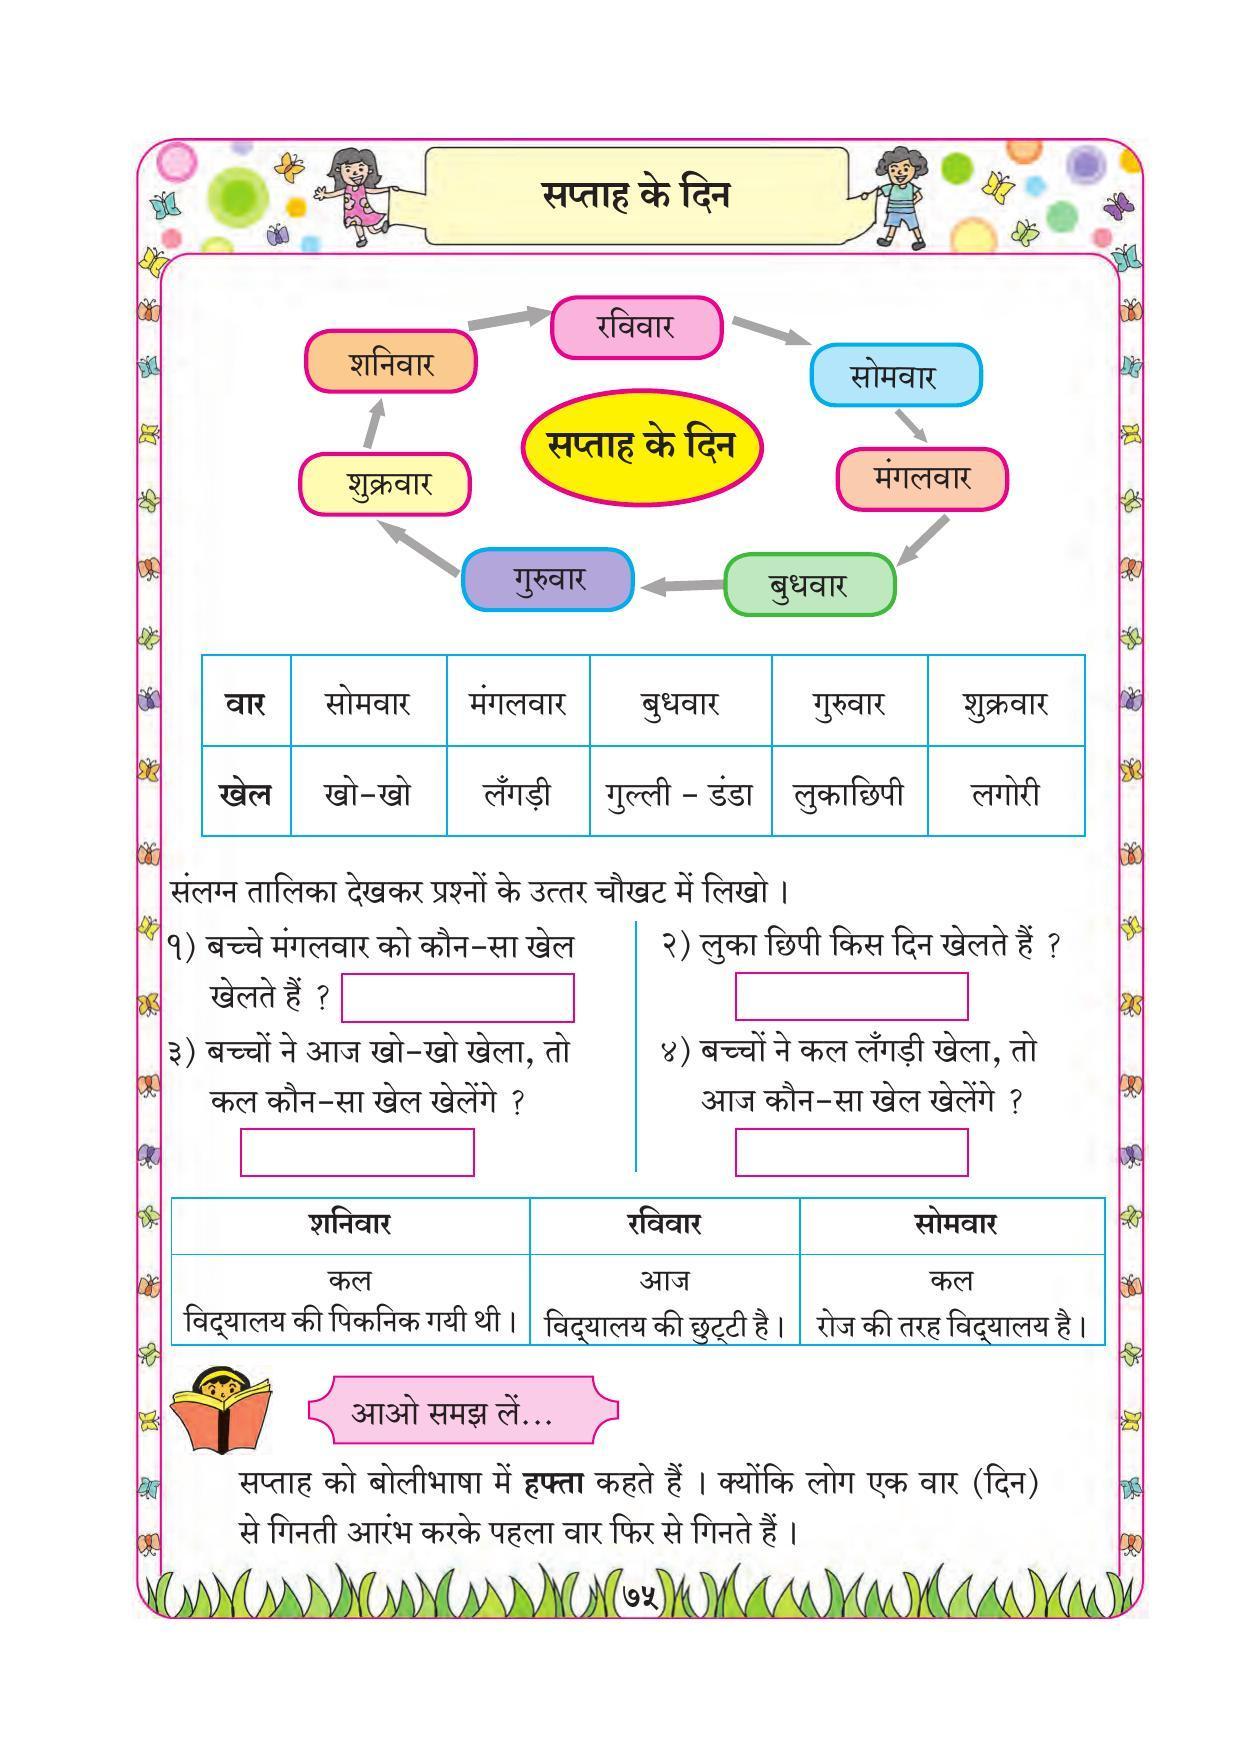 Maharashtra Board Class 1 Maths (Hindi Medium) Textbook - Page 85